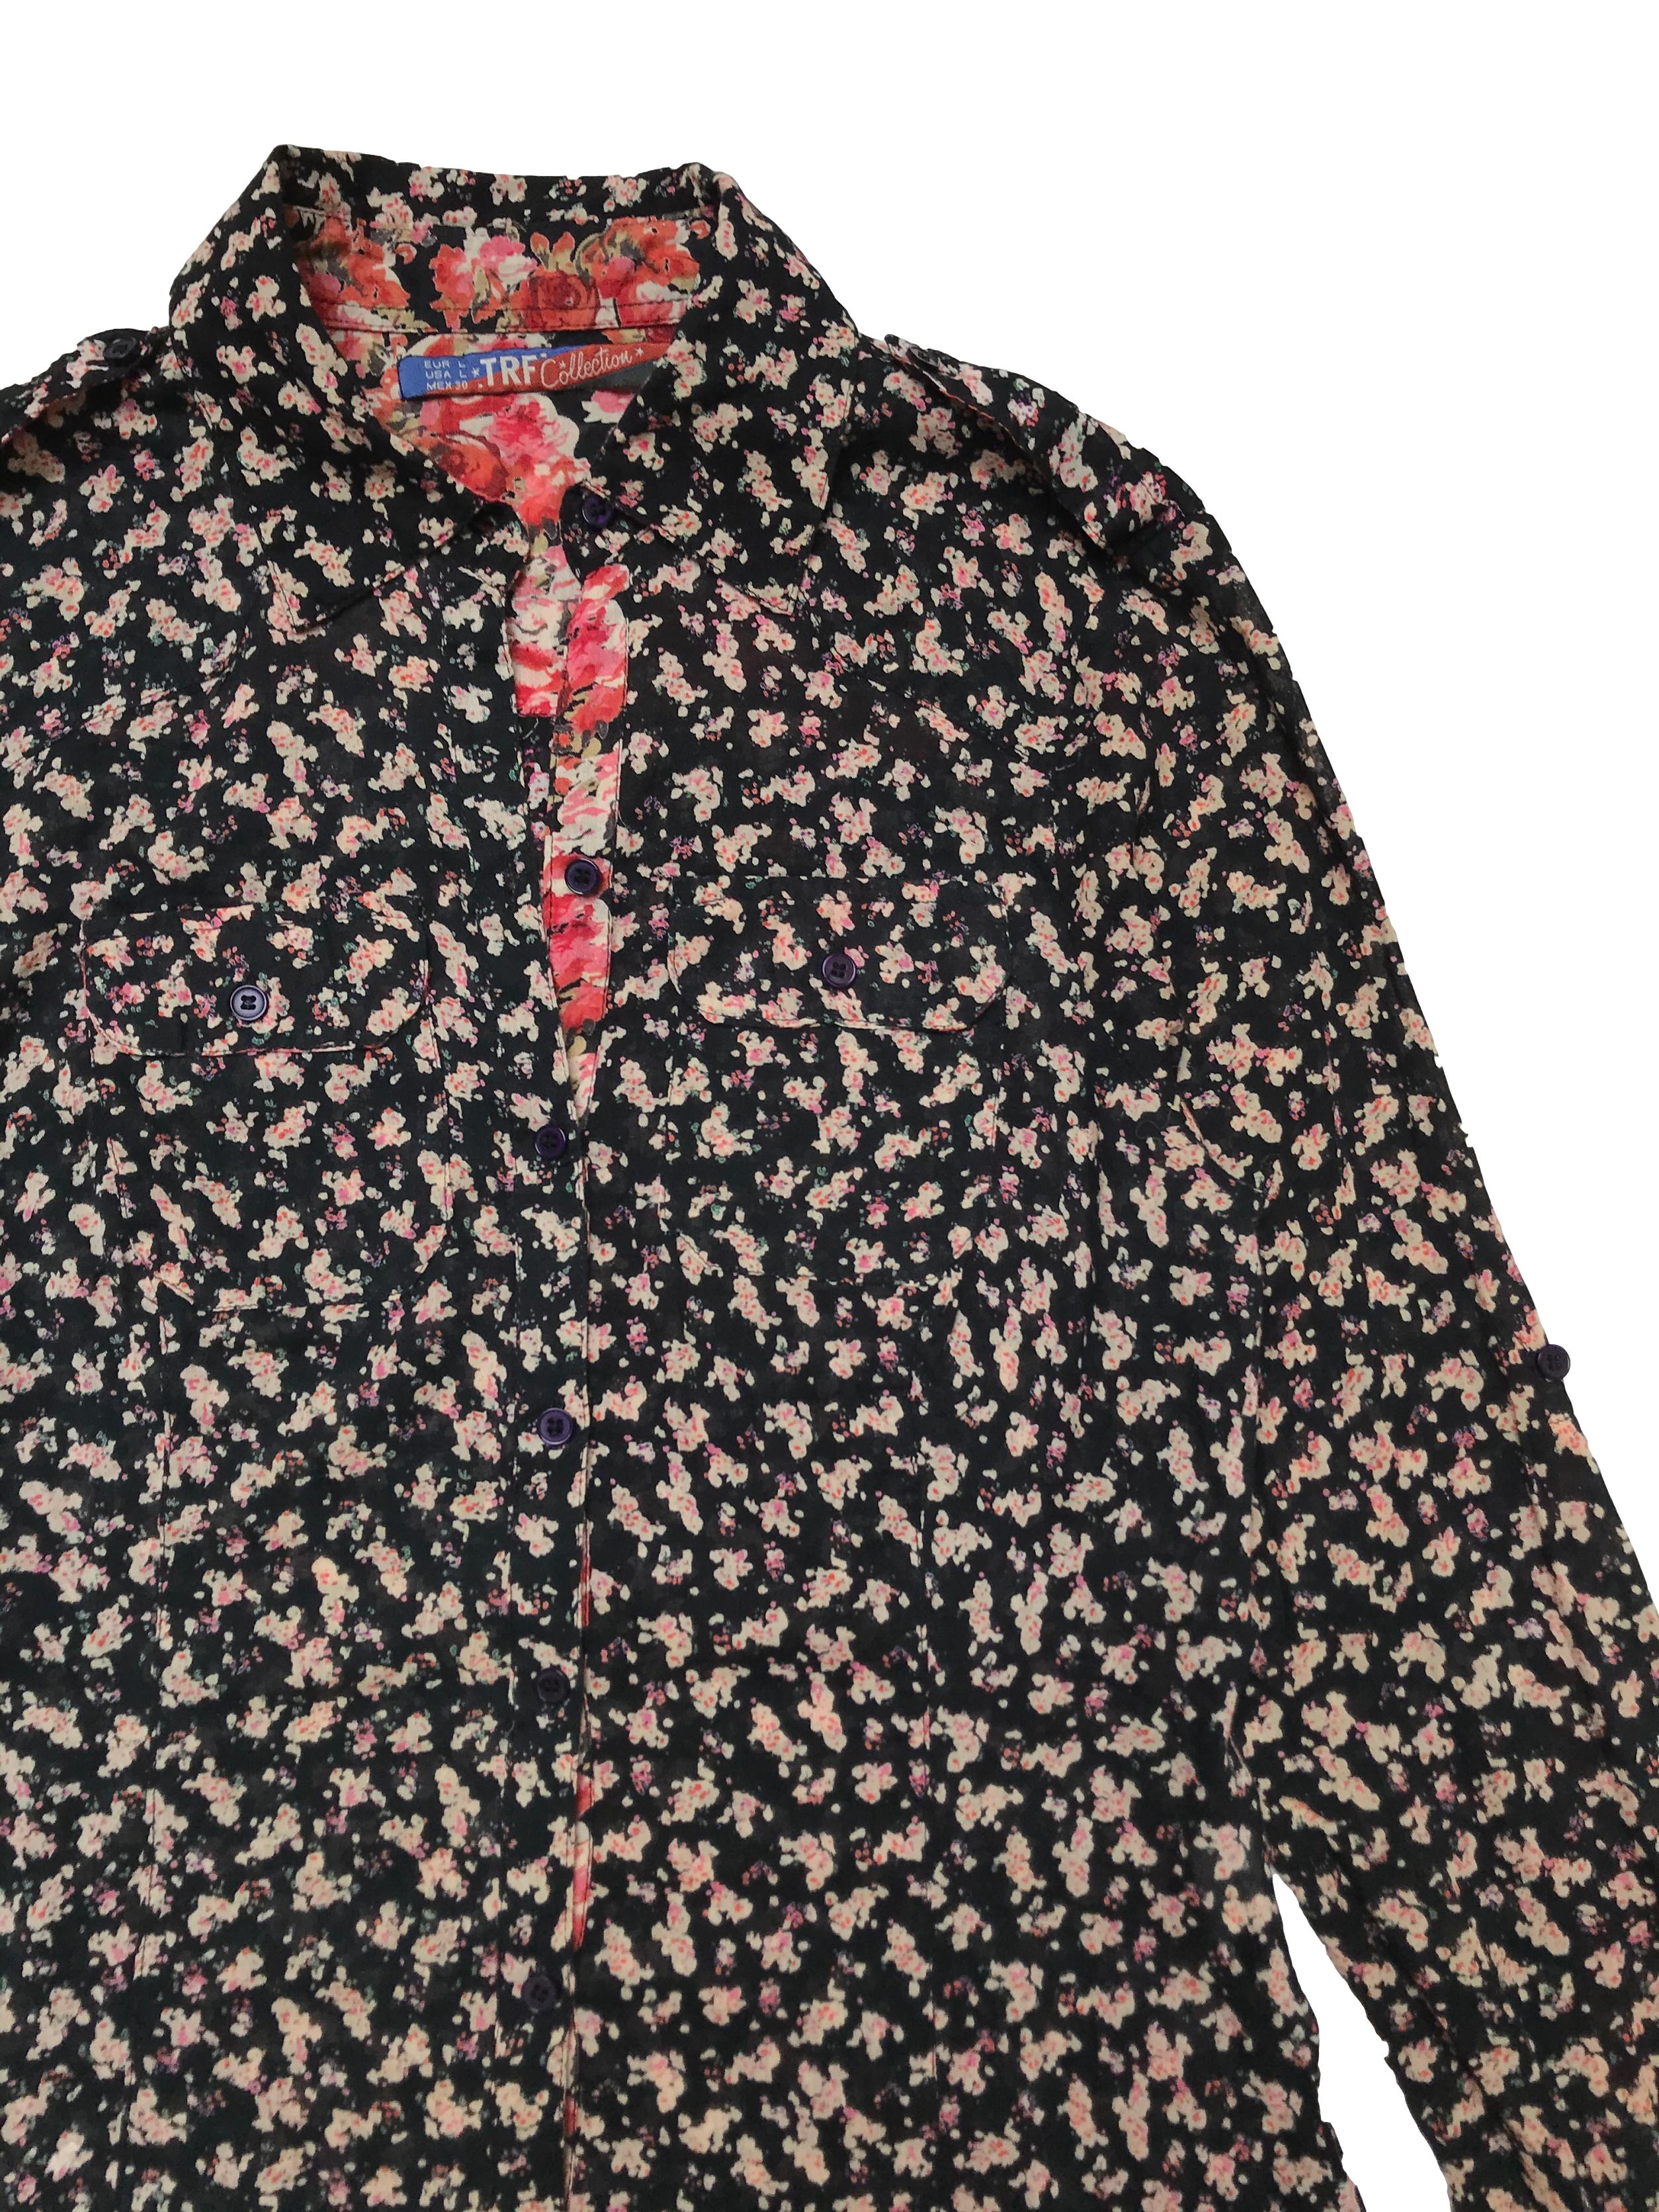 Camisa Zara 100% algodón negra con estampado de flores, tiene pinzas, botones y bolsillos delanteros. Busto 97cm Largo 60cm 